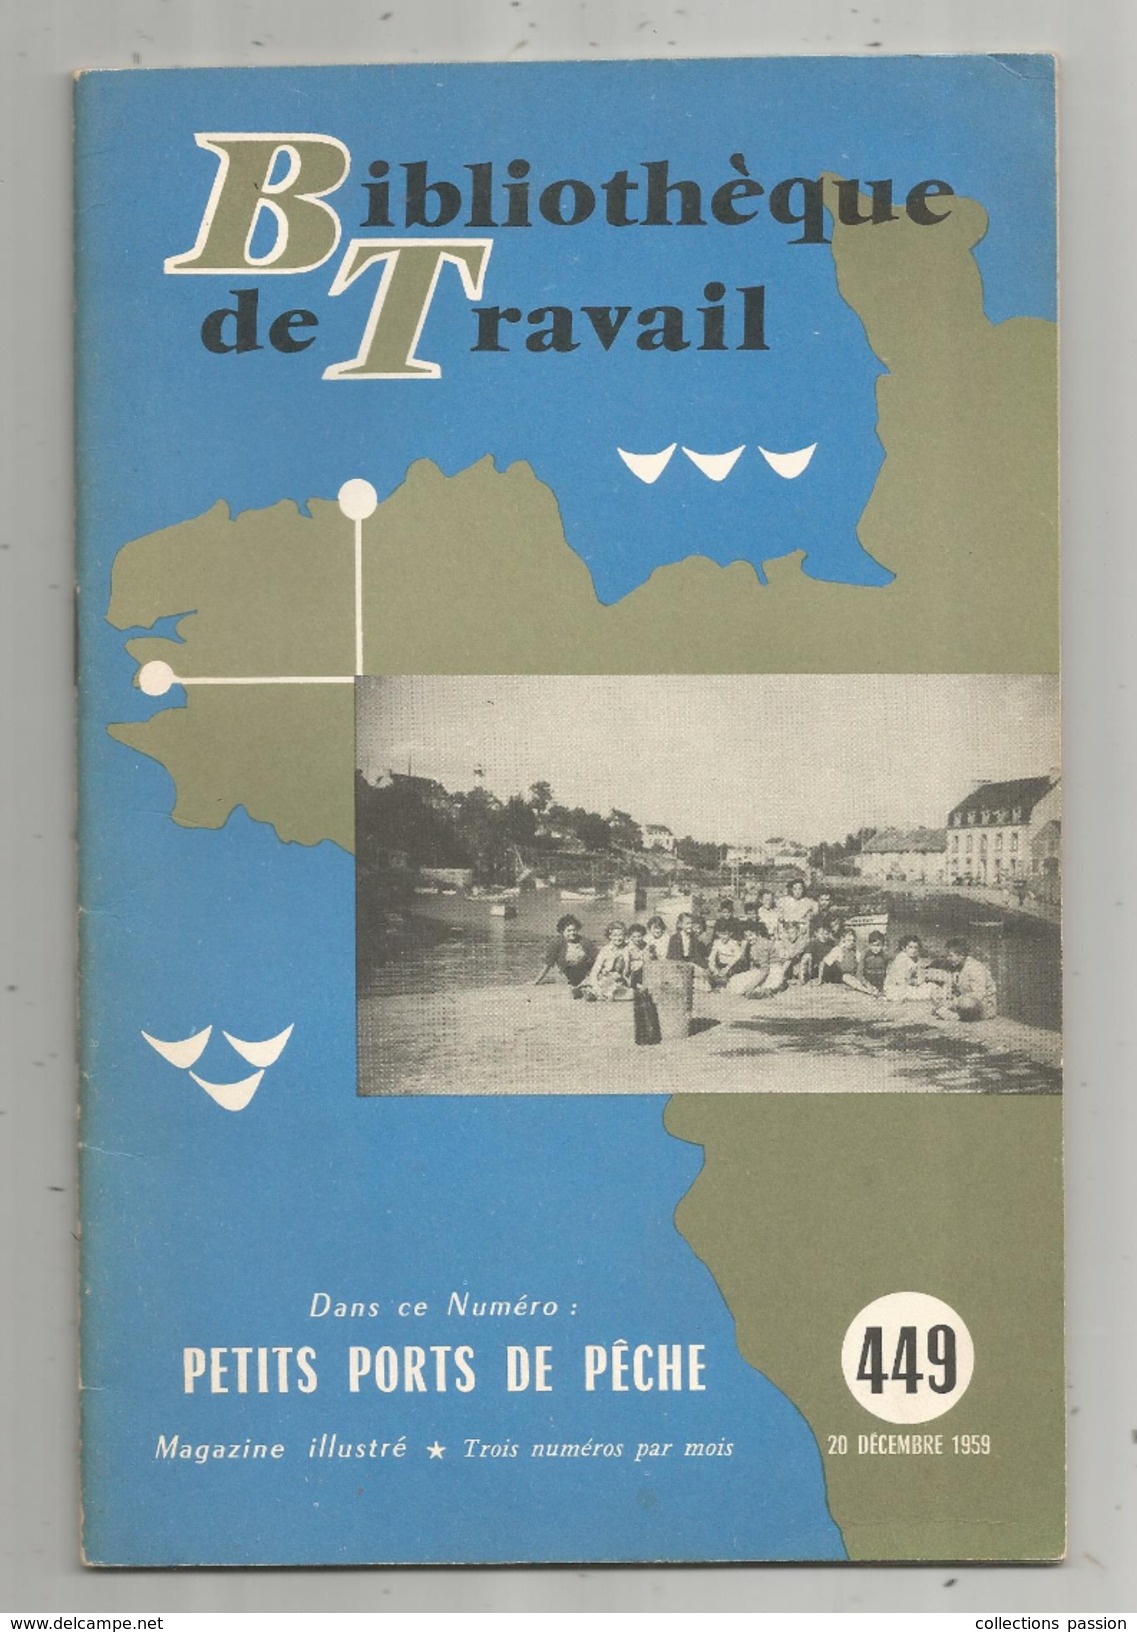 Bibliothéque De Travail, N° 449, 1959, Petits PORTS De PÊCHE, 28 Pages, Photos, Plans, Illustratration, Frais Fr : 2.45& - Caccia/Pesca